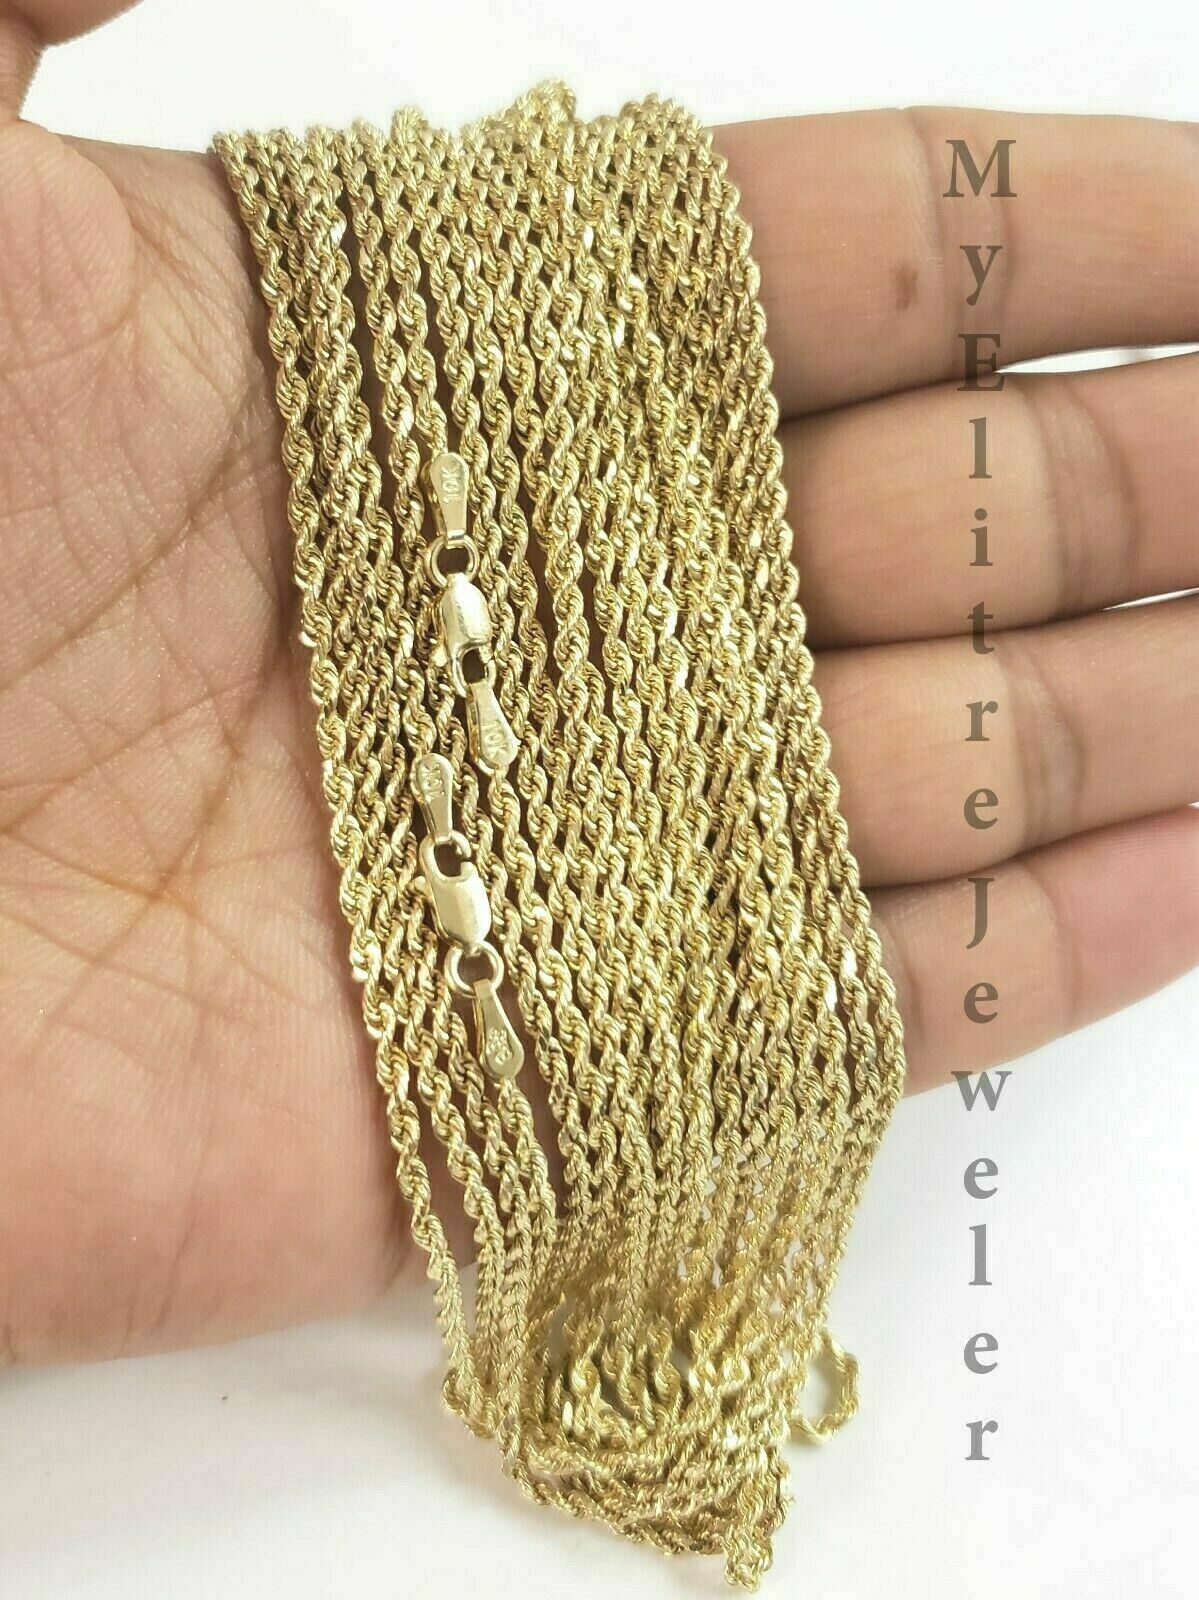 14K White Gold Rope Chain Bracelet